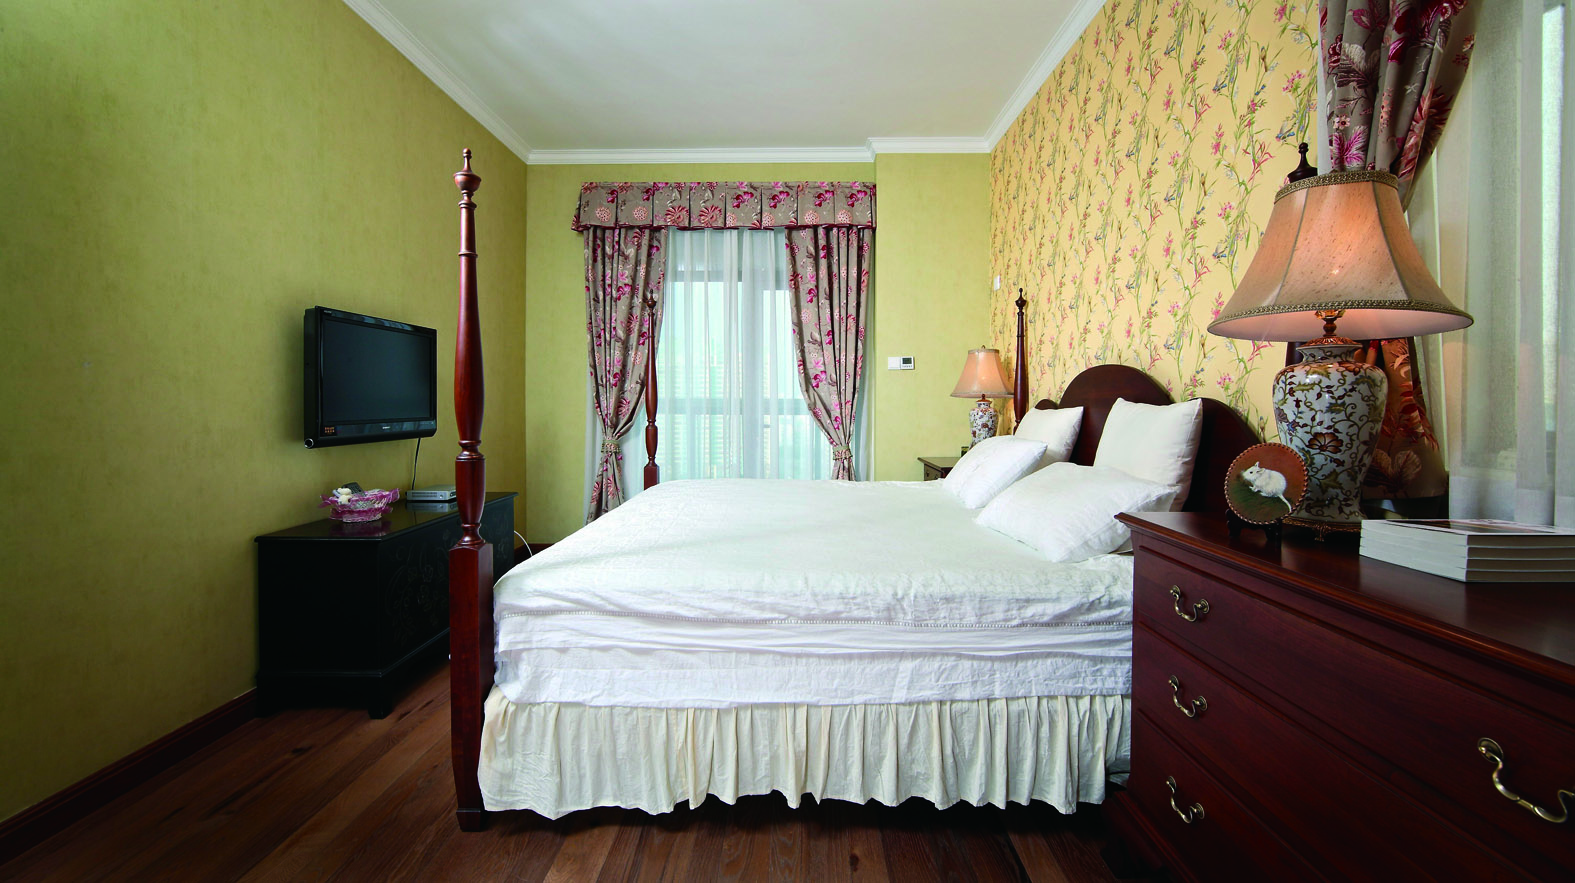 床品选用淡雅的乳白色，平衡了空间的同时又不会抢了壁纸和窗帘的风头。